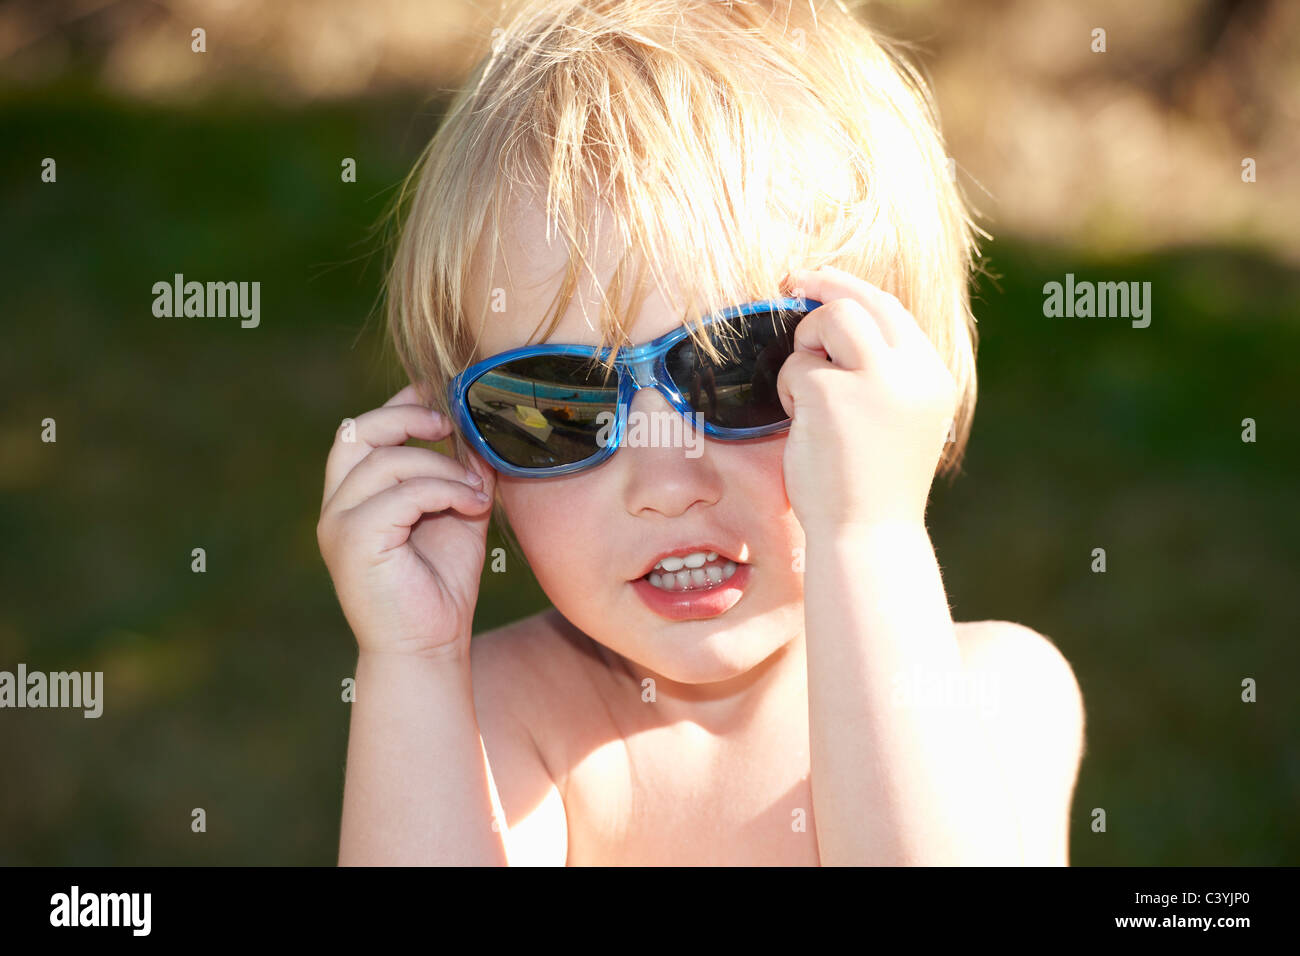 Bébé garçon avec des lunettes Banque D'Images